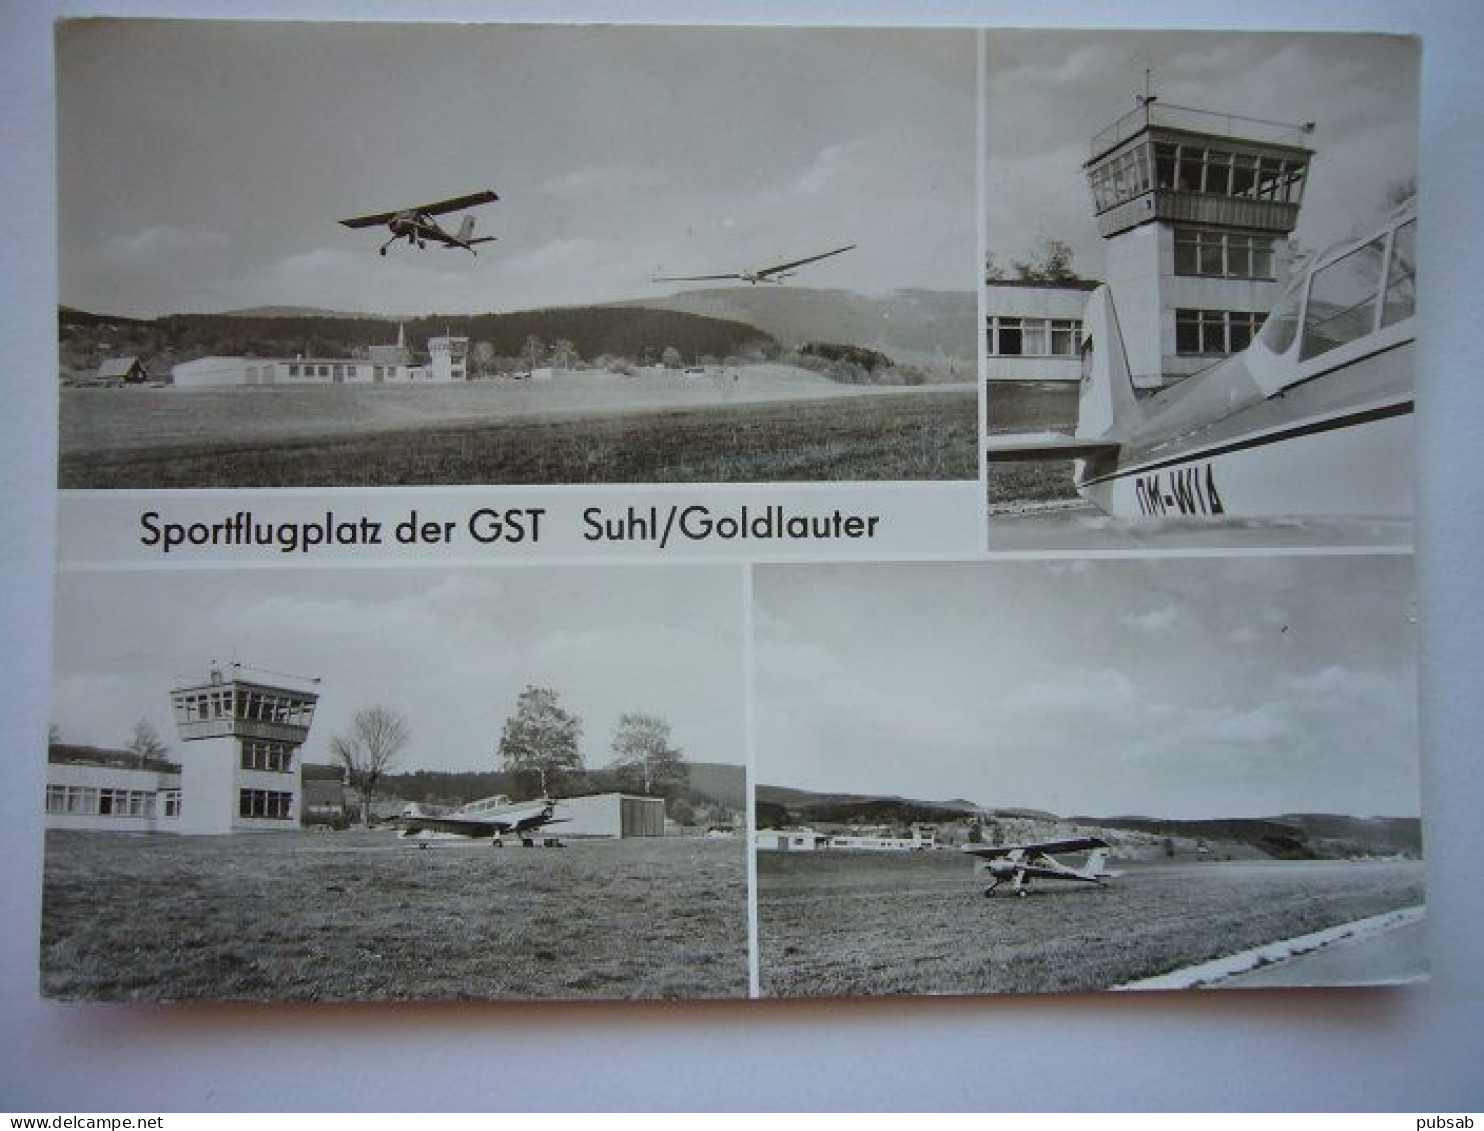 Avion / Airplane / Suhl / Goldlauter Airport / Sportflugplatz Der GST / Flughafen / Aéroport / Aeroporto - Aerodrome